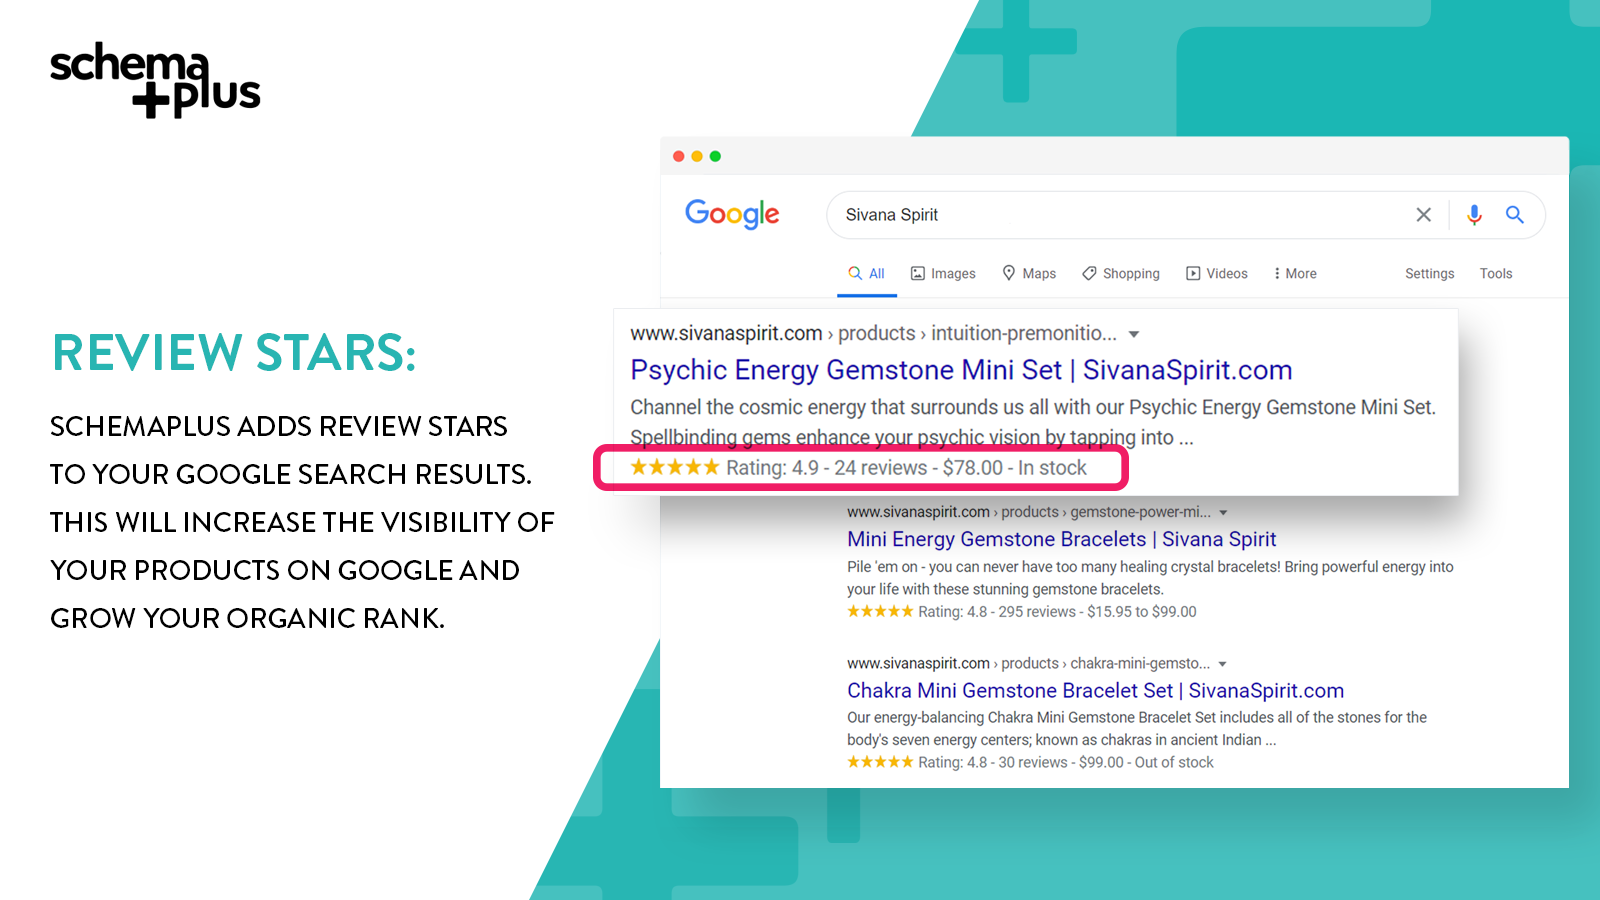 SchemaPlus will add review stars on Google.